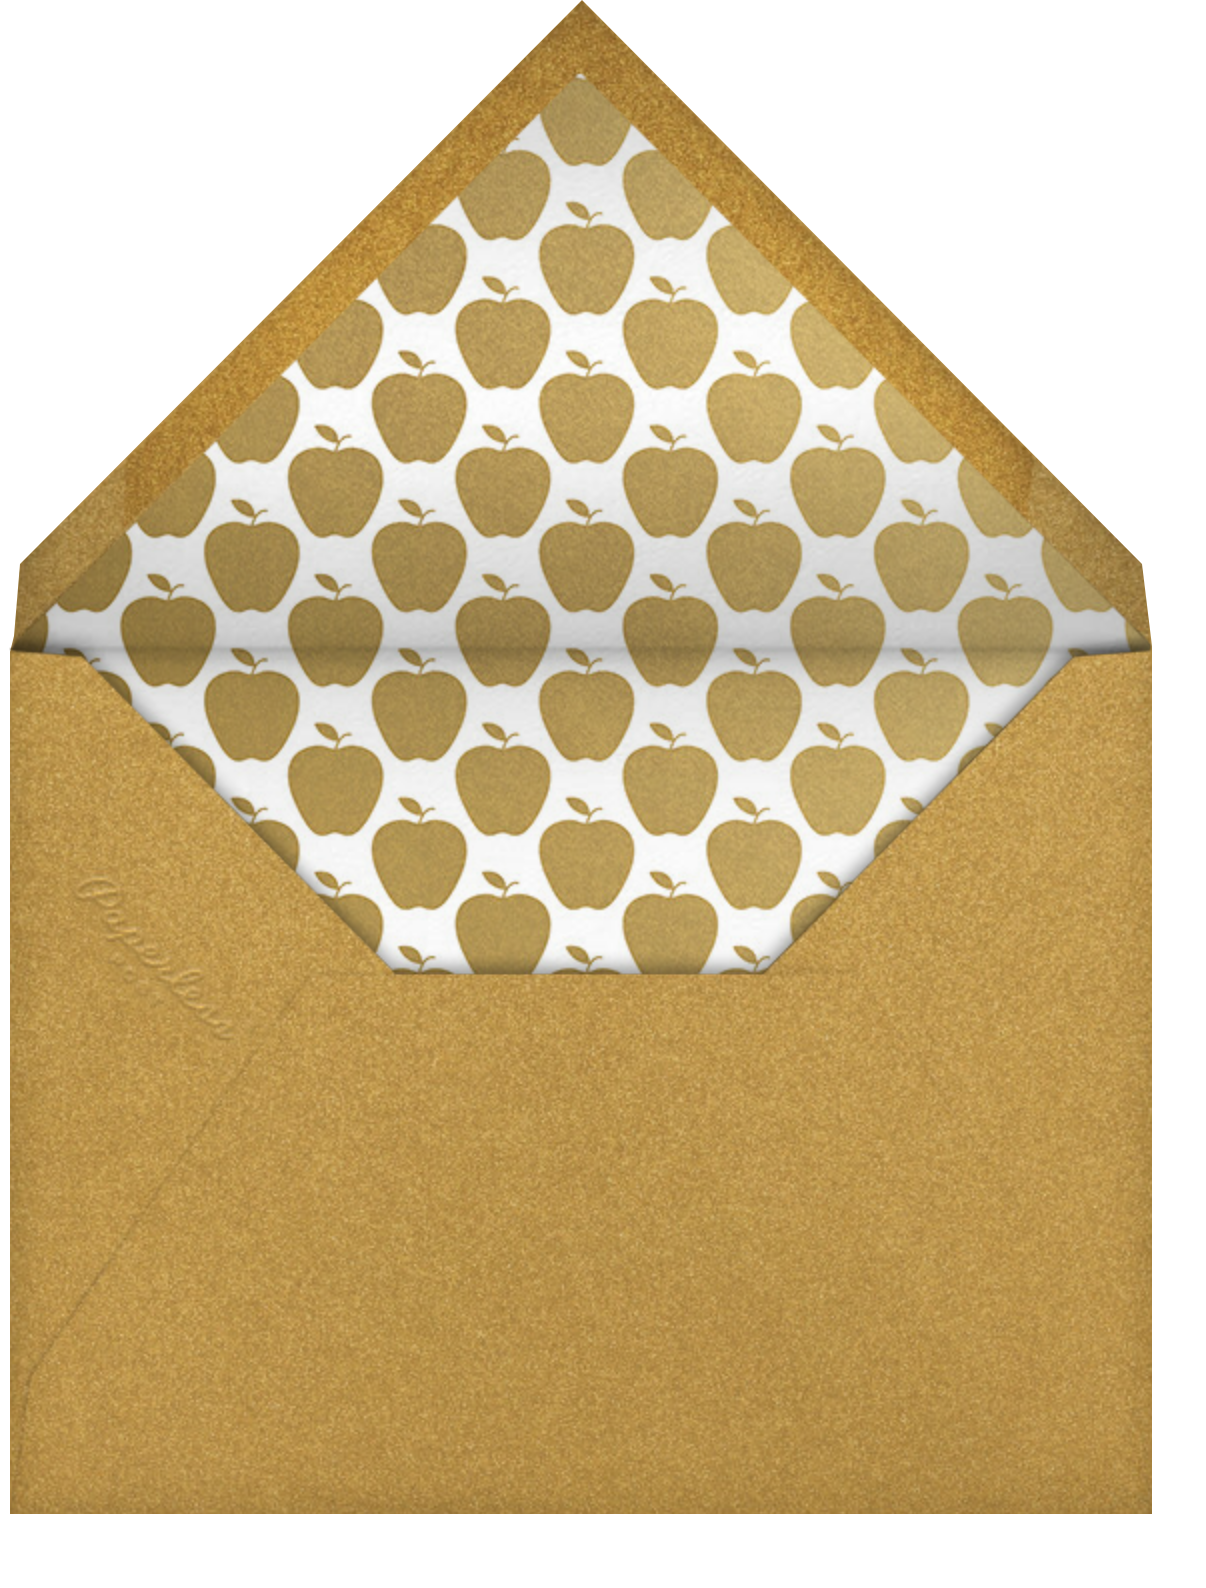 Honey Dipper - Paperless Post - Envelope